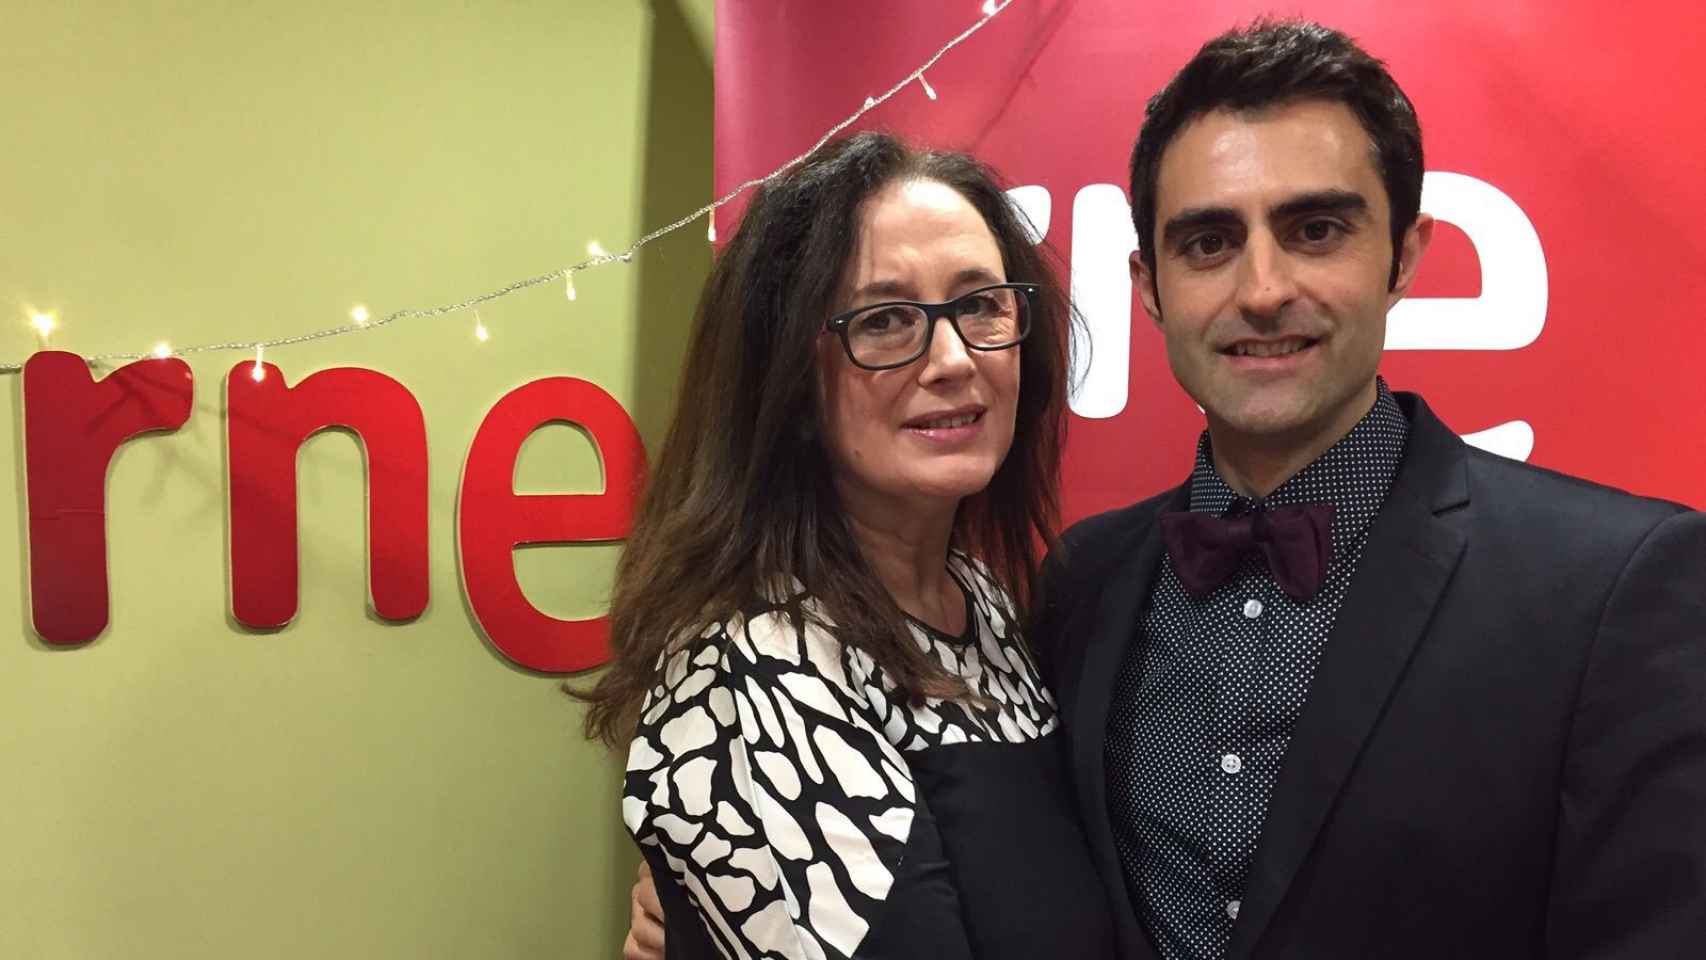 Elisenda Roca con Carles Mesa, del programa radiofónico 'Gente despierta' en RNE